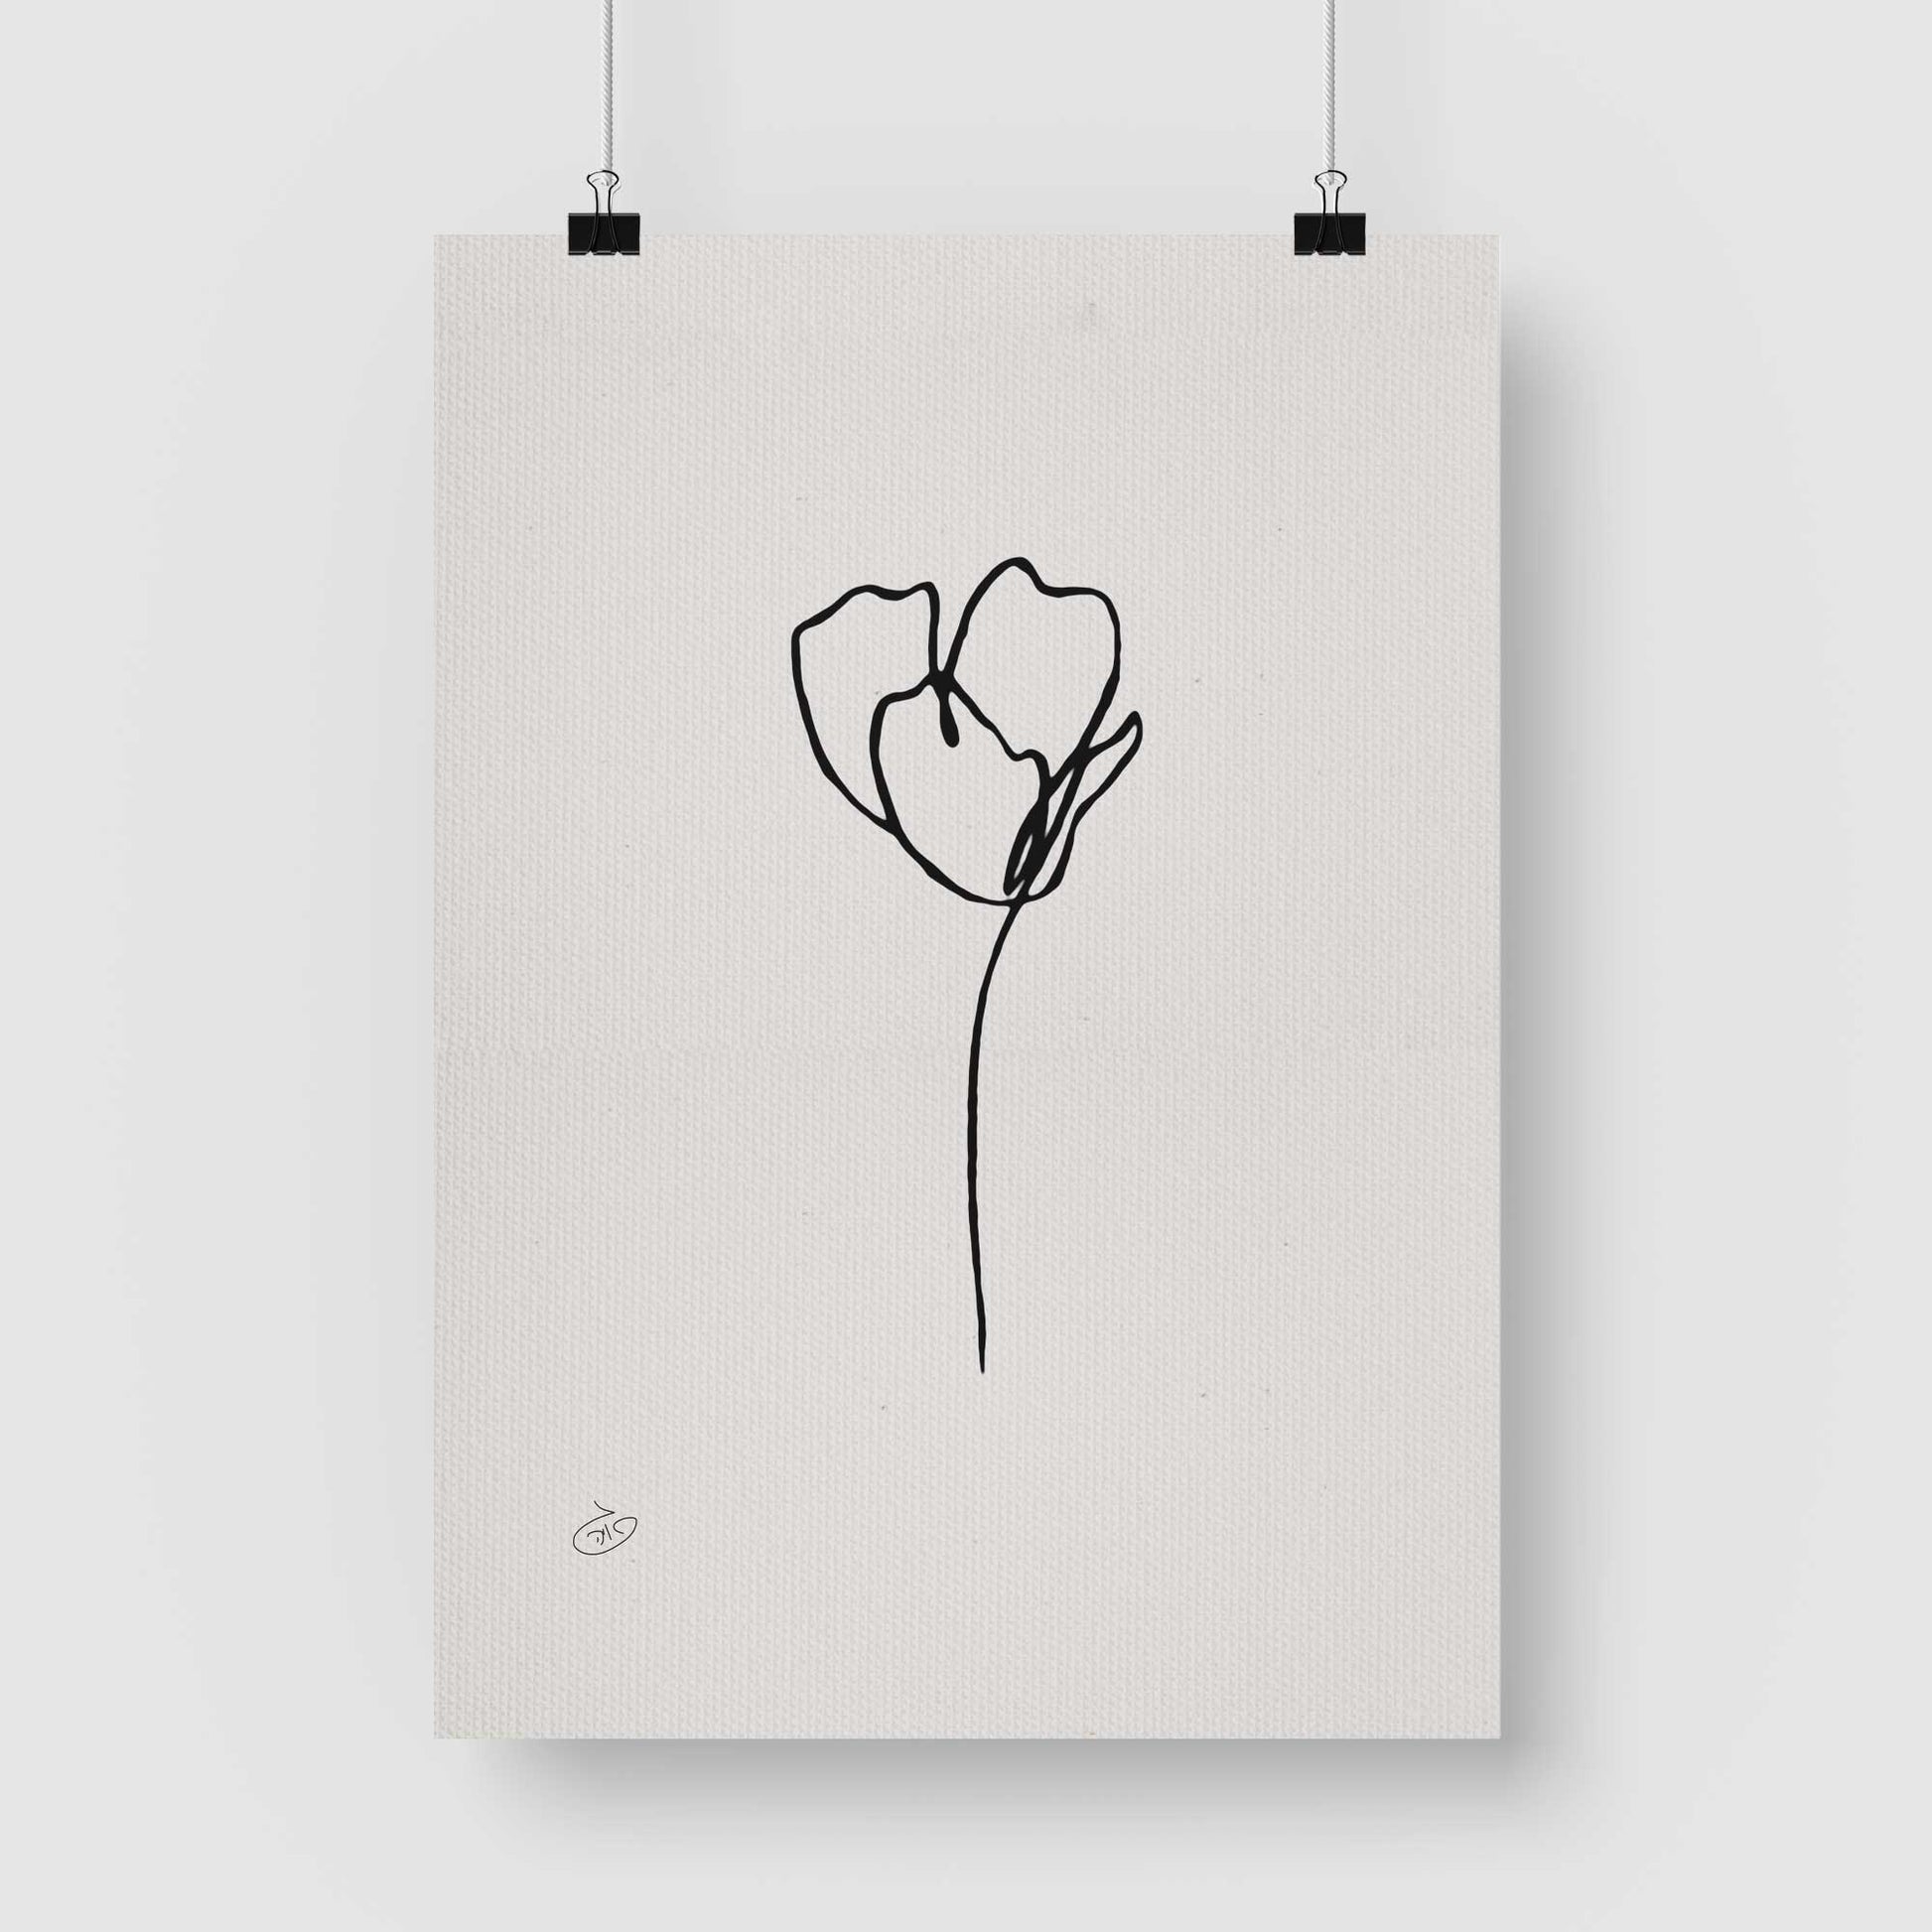 פוסטר One Line Flower - Camila Poster ציור מקורי של גאיה המקדם את המודעות לאלימות בין בני זוג בכלל וכלפי נשים בפרט